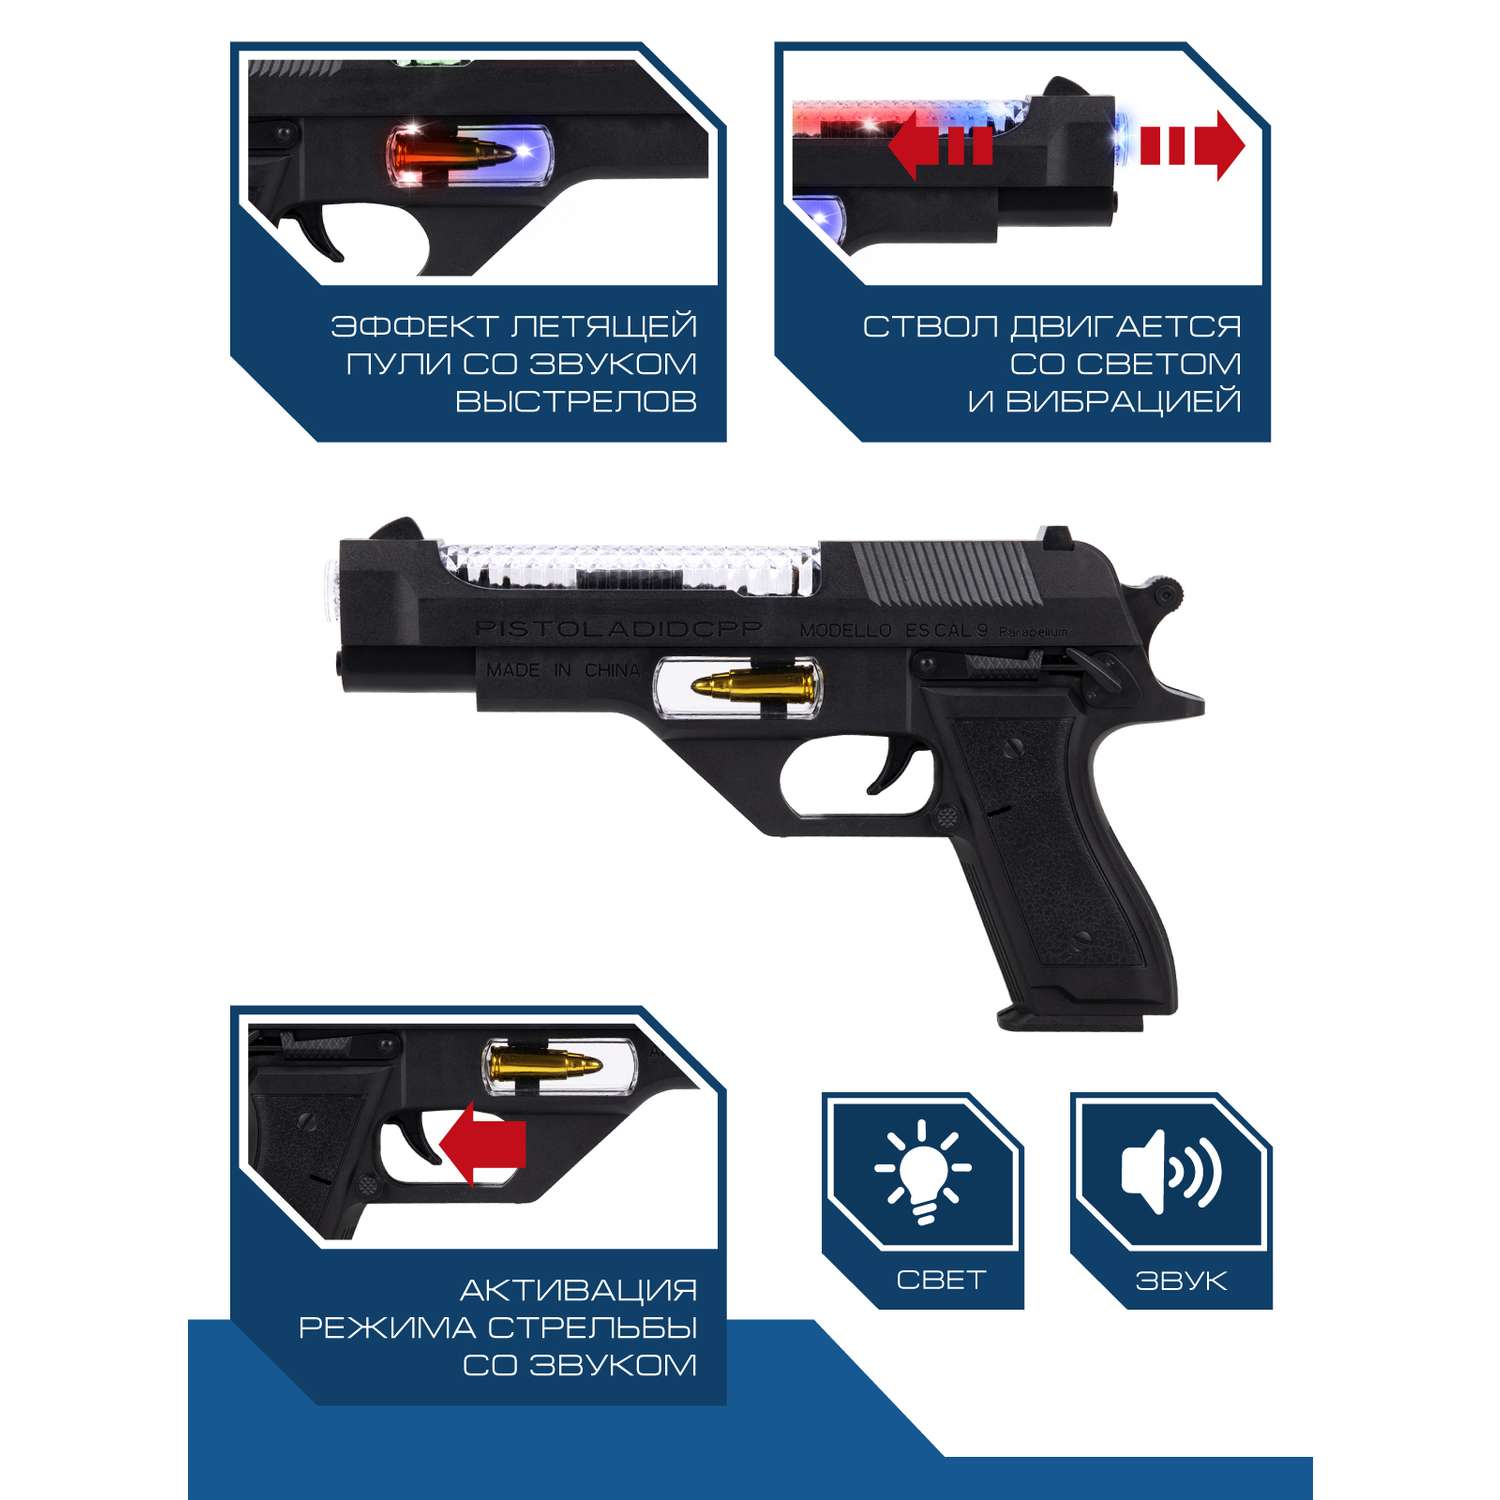 Игрушечное оружие Маленький Воин Пистолет 23 см на батарейках со звуком светом и вибрацией JB0211026 - фото 2